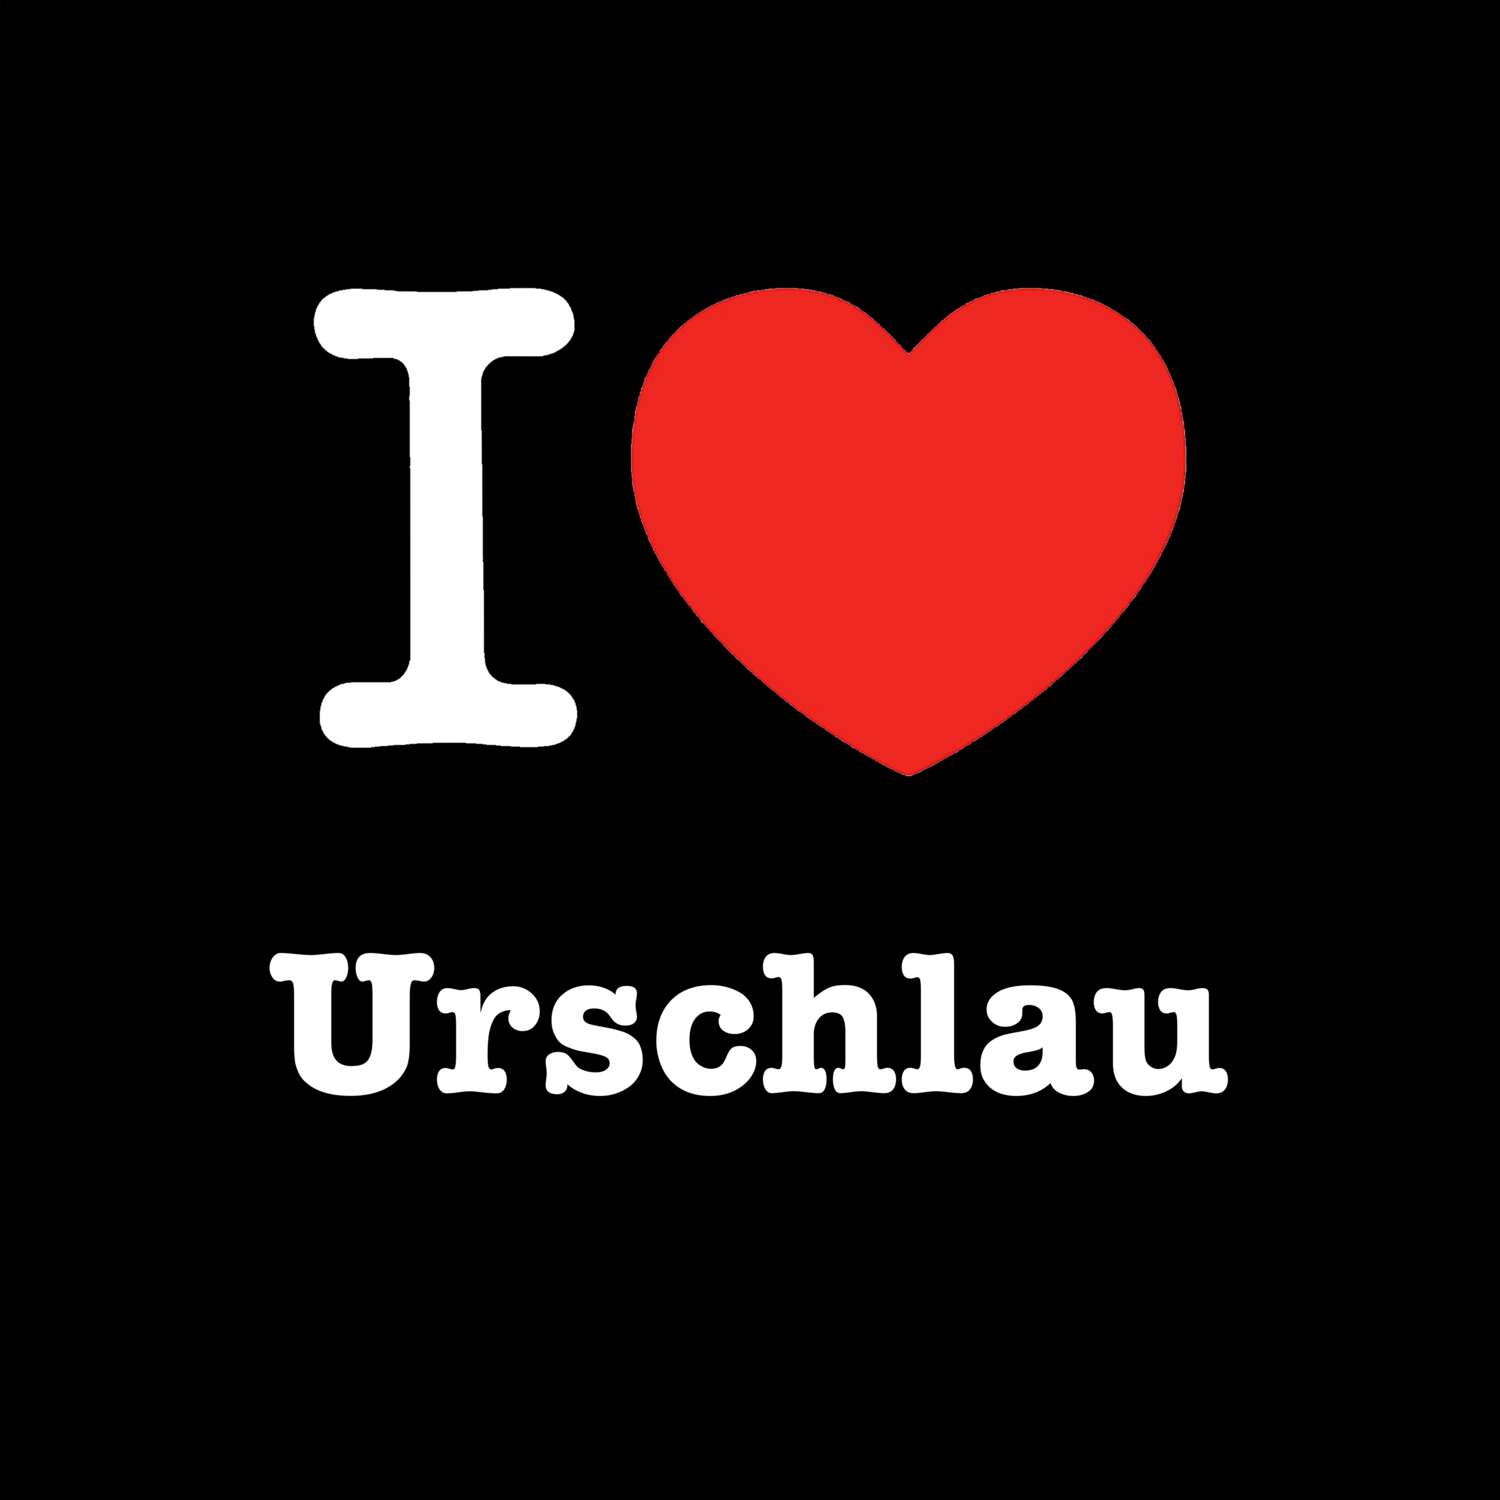 Urschlau T-Shirt »I love«